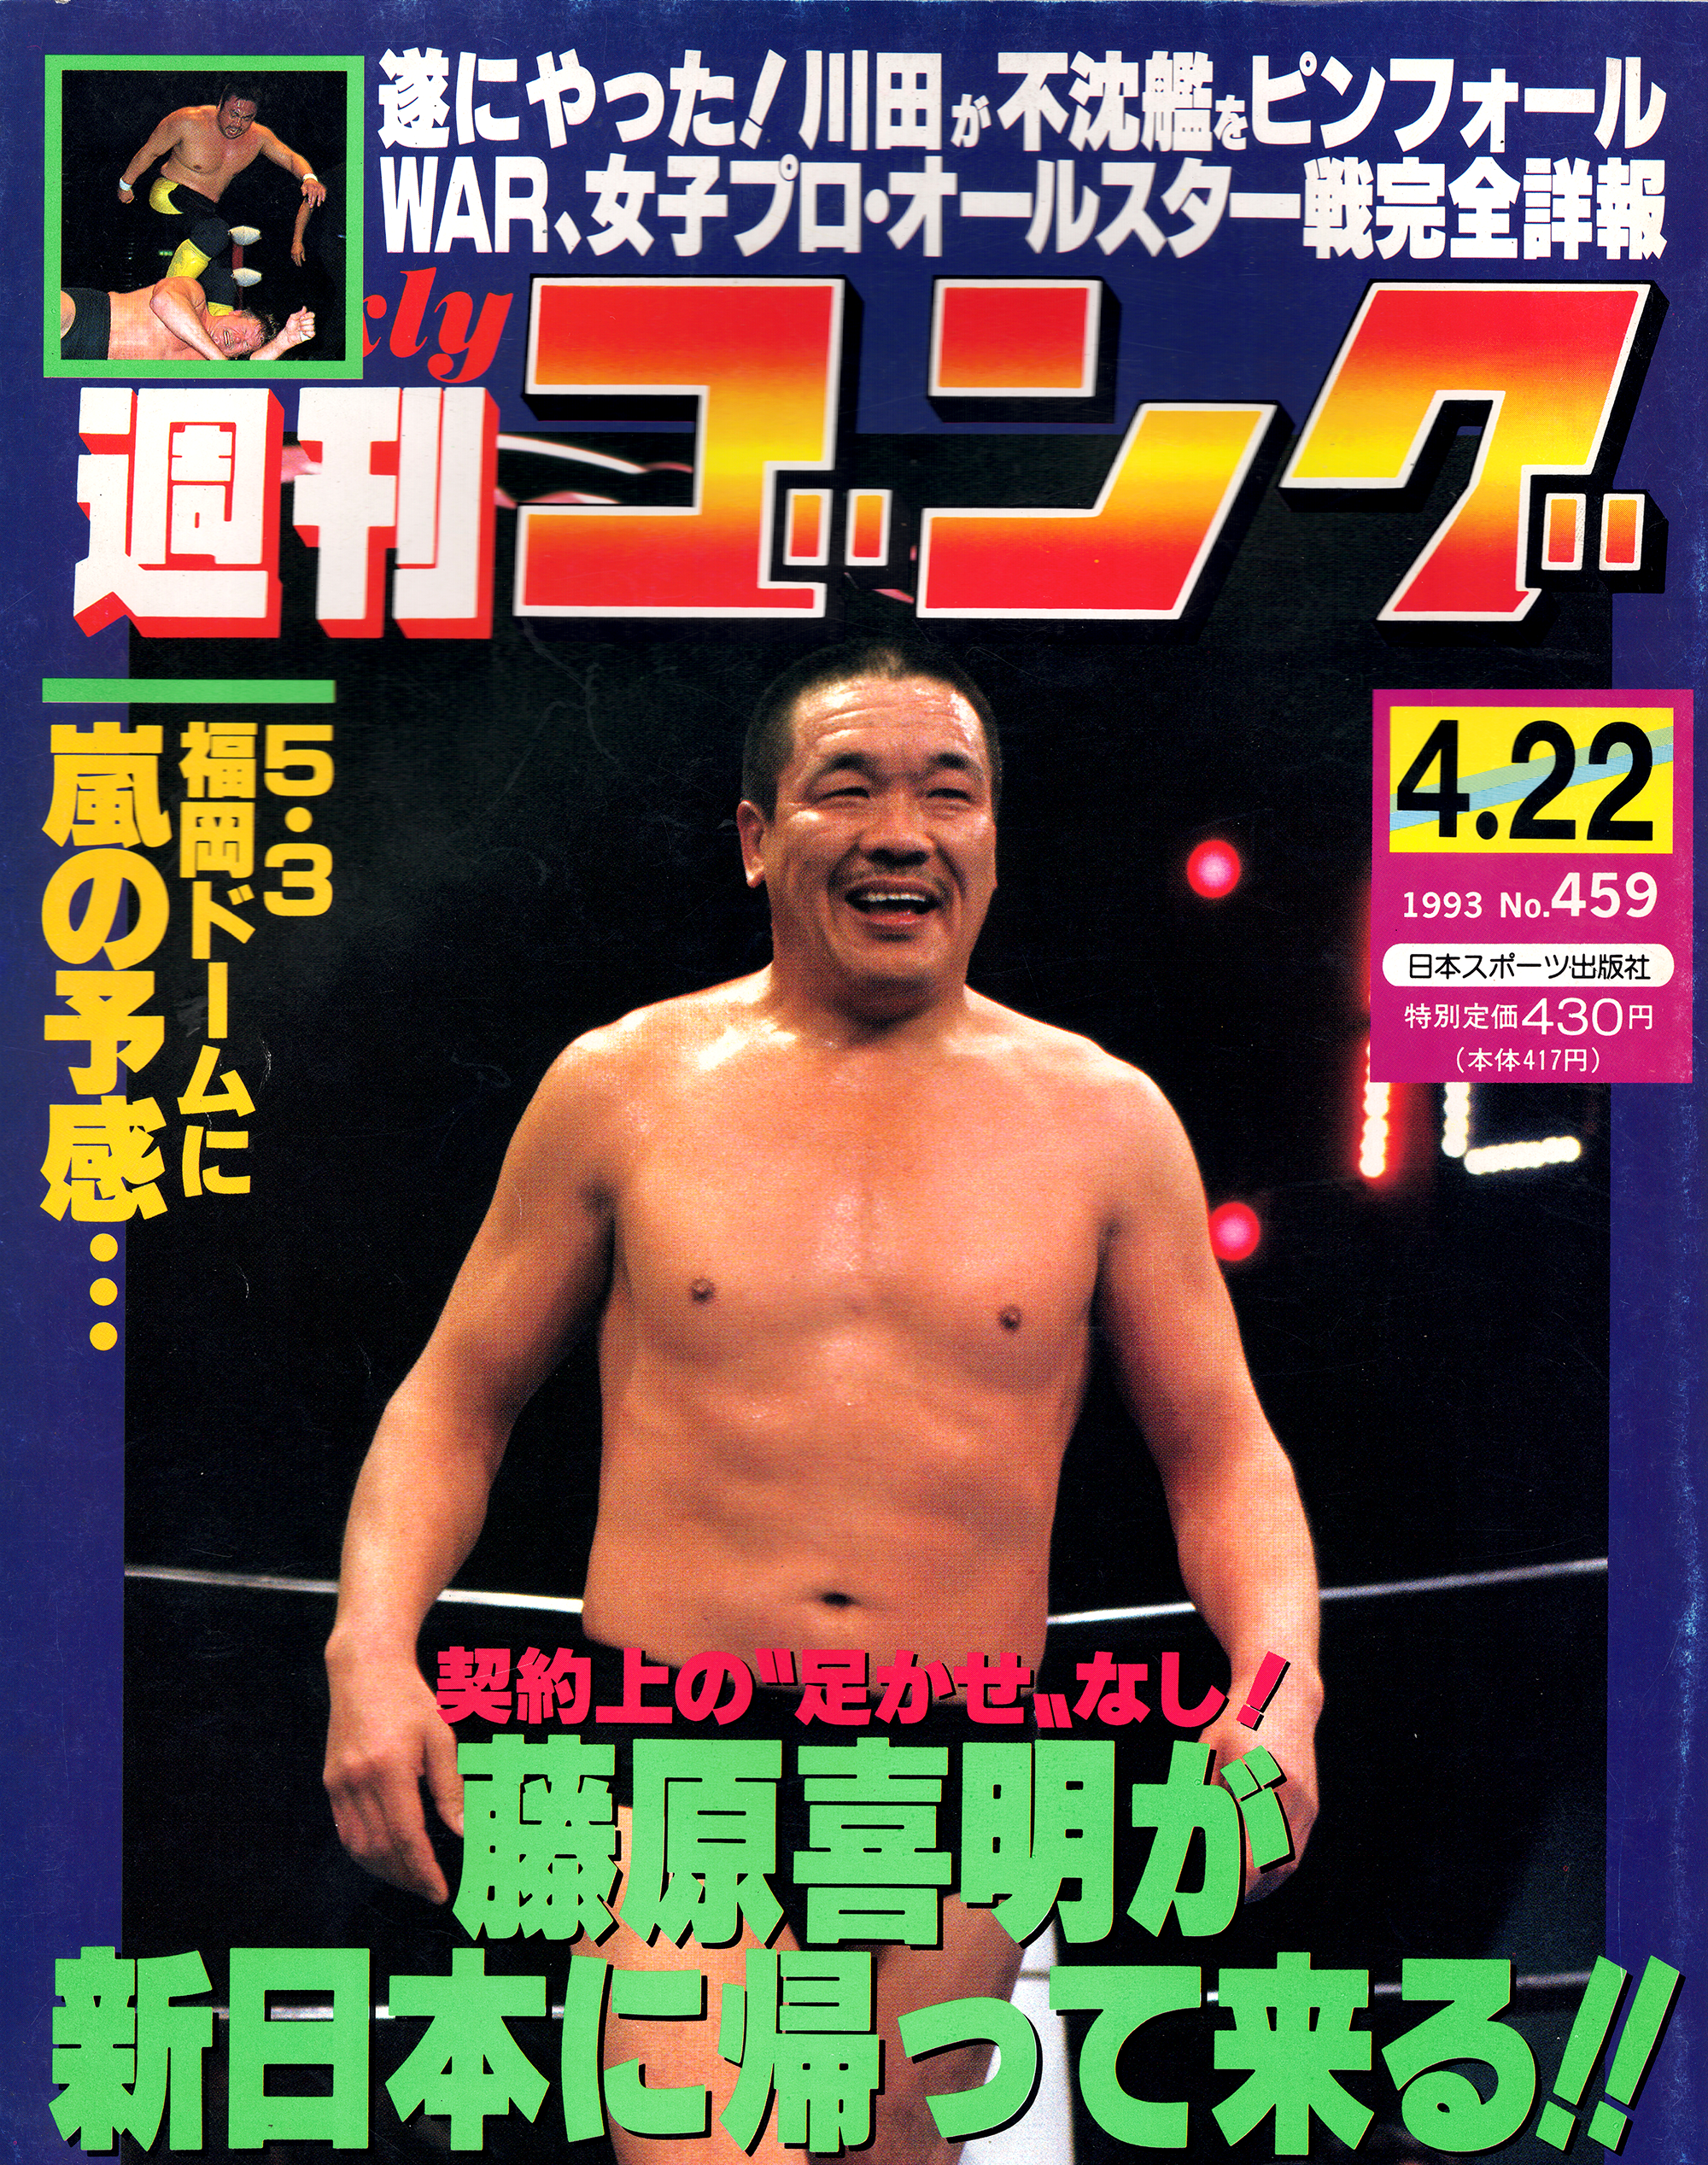 ゴング誌」昭和45(1970)年全号コンプリート 格闘技/プロレス 通年定番